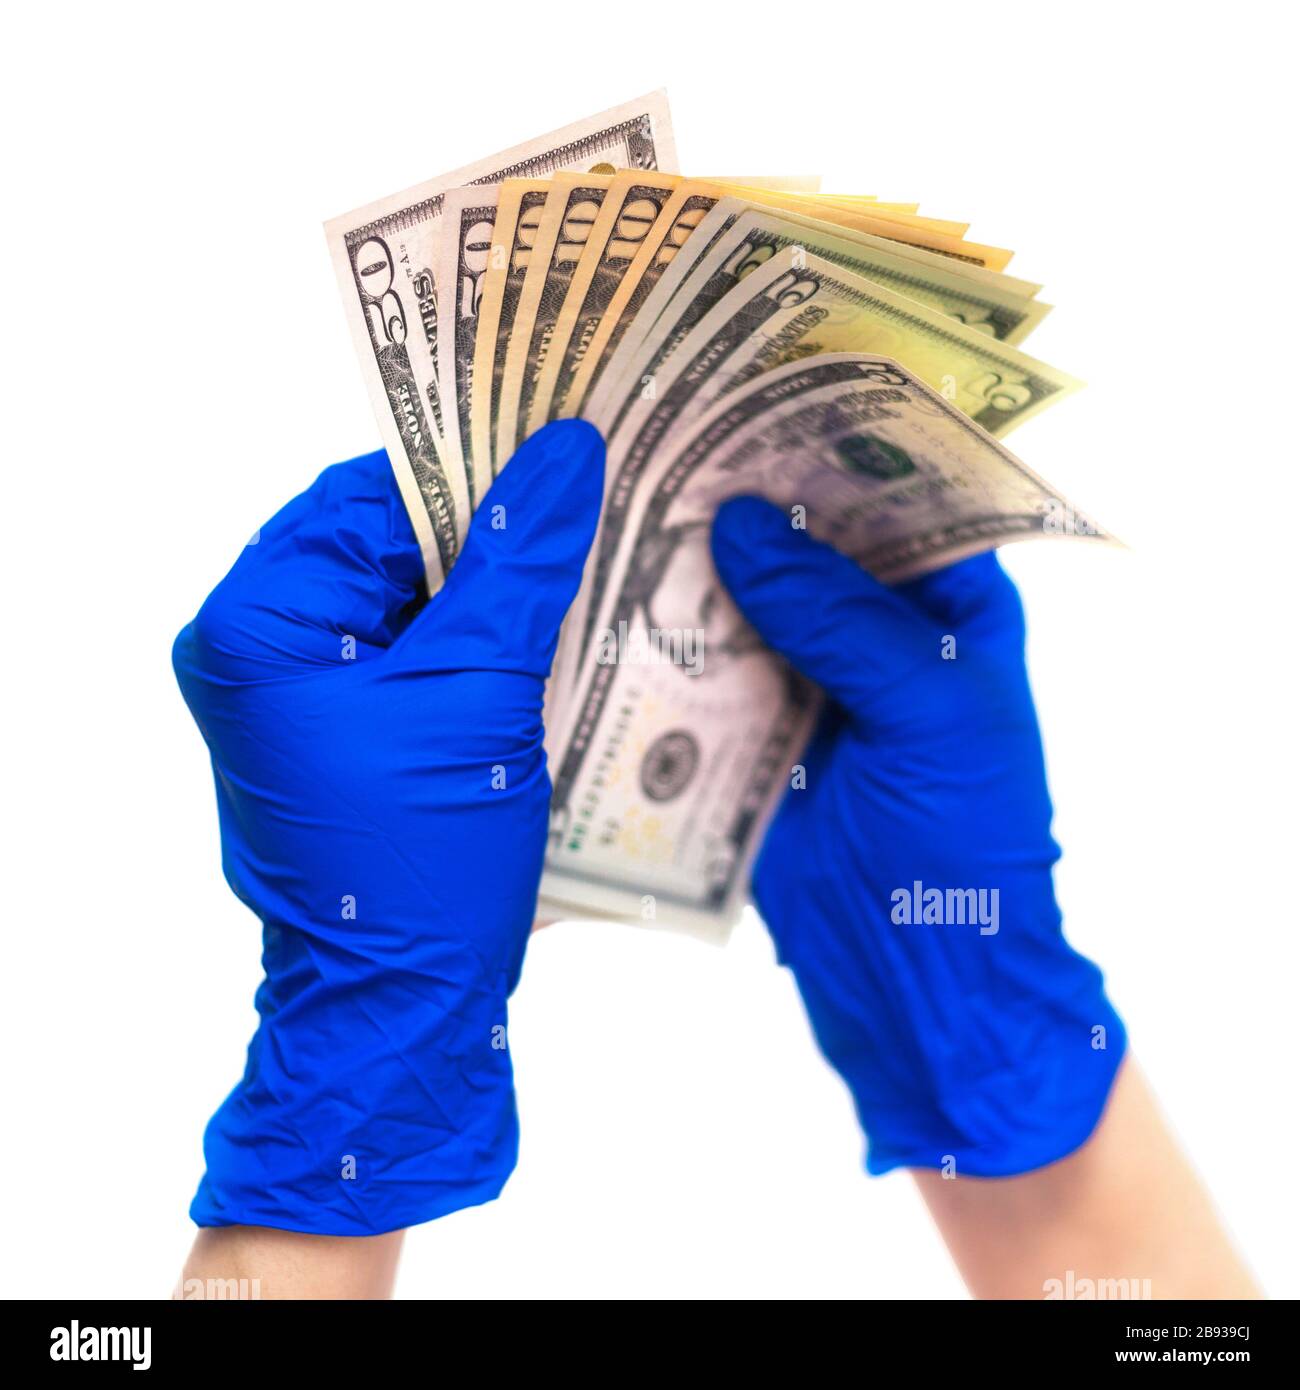 Hände in medizinischen Handschuhen, die ein Bündel von Dollar enthalten. Das Konzept der Geldinfektion, des schmutzigen Geldes, der bezahlten Medikamente, der Behandlungsgebühren, der Bestechung, der illegalen Operation. Stockfoto